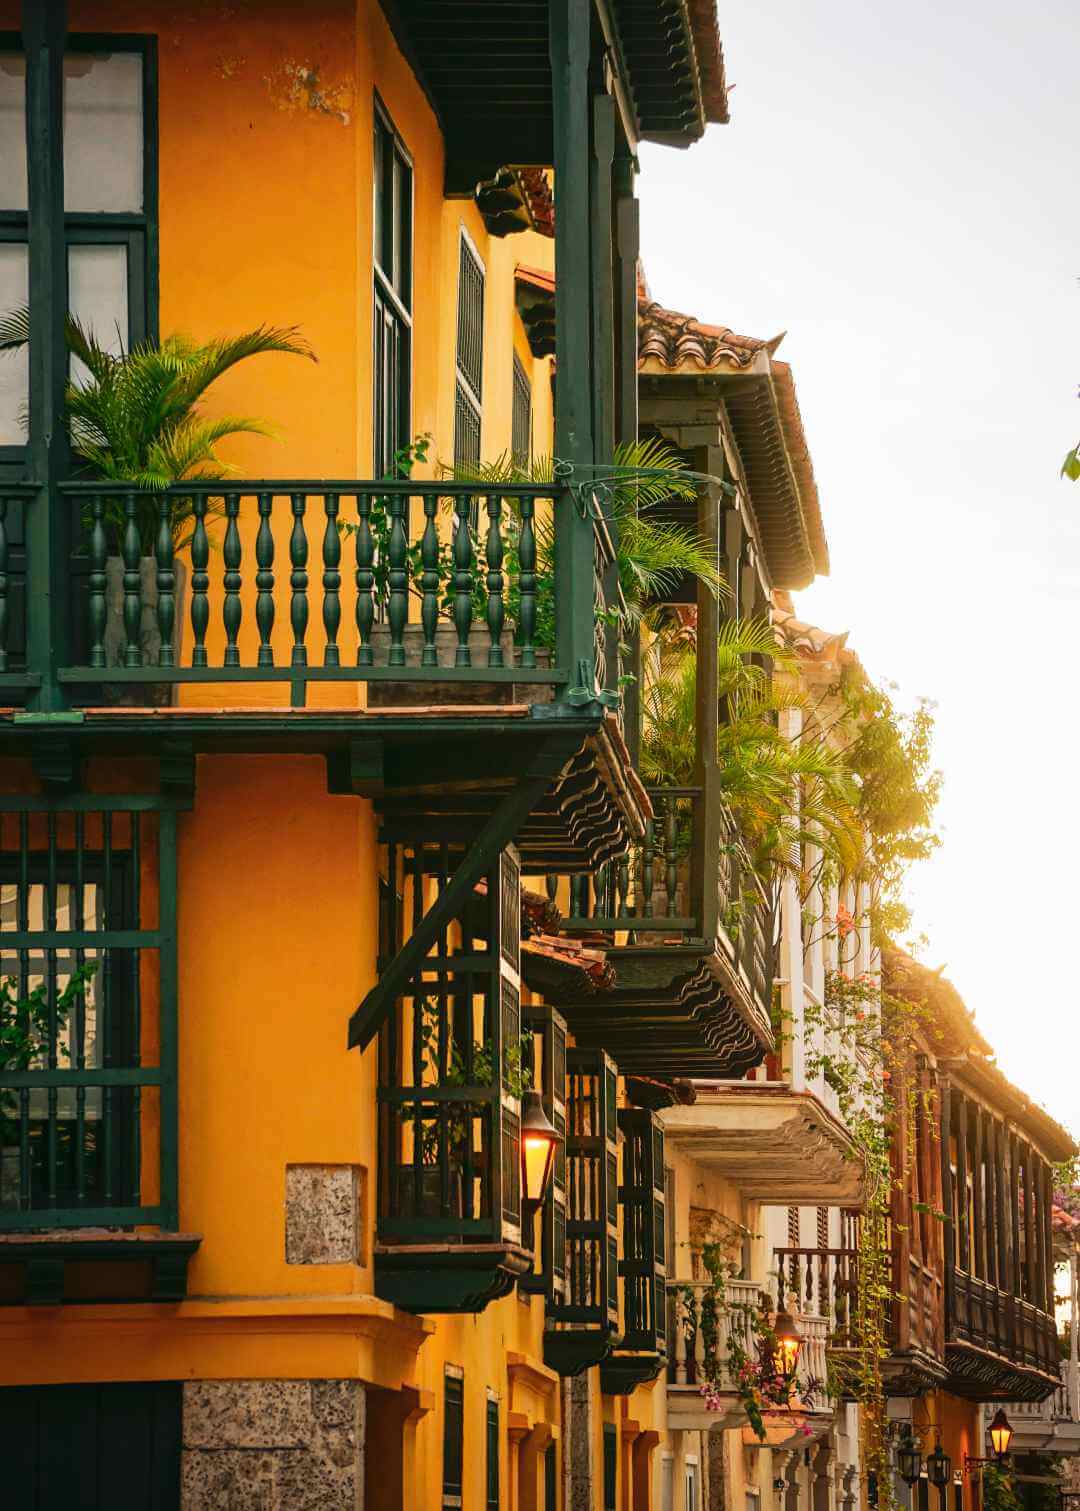 Casas de la ciudad fortificada de Cartagena